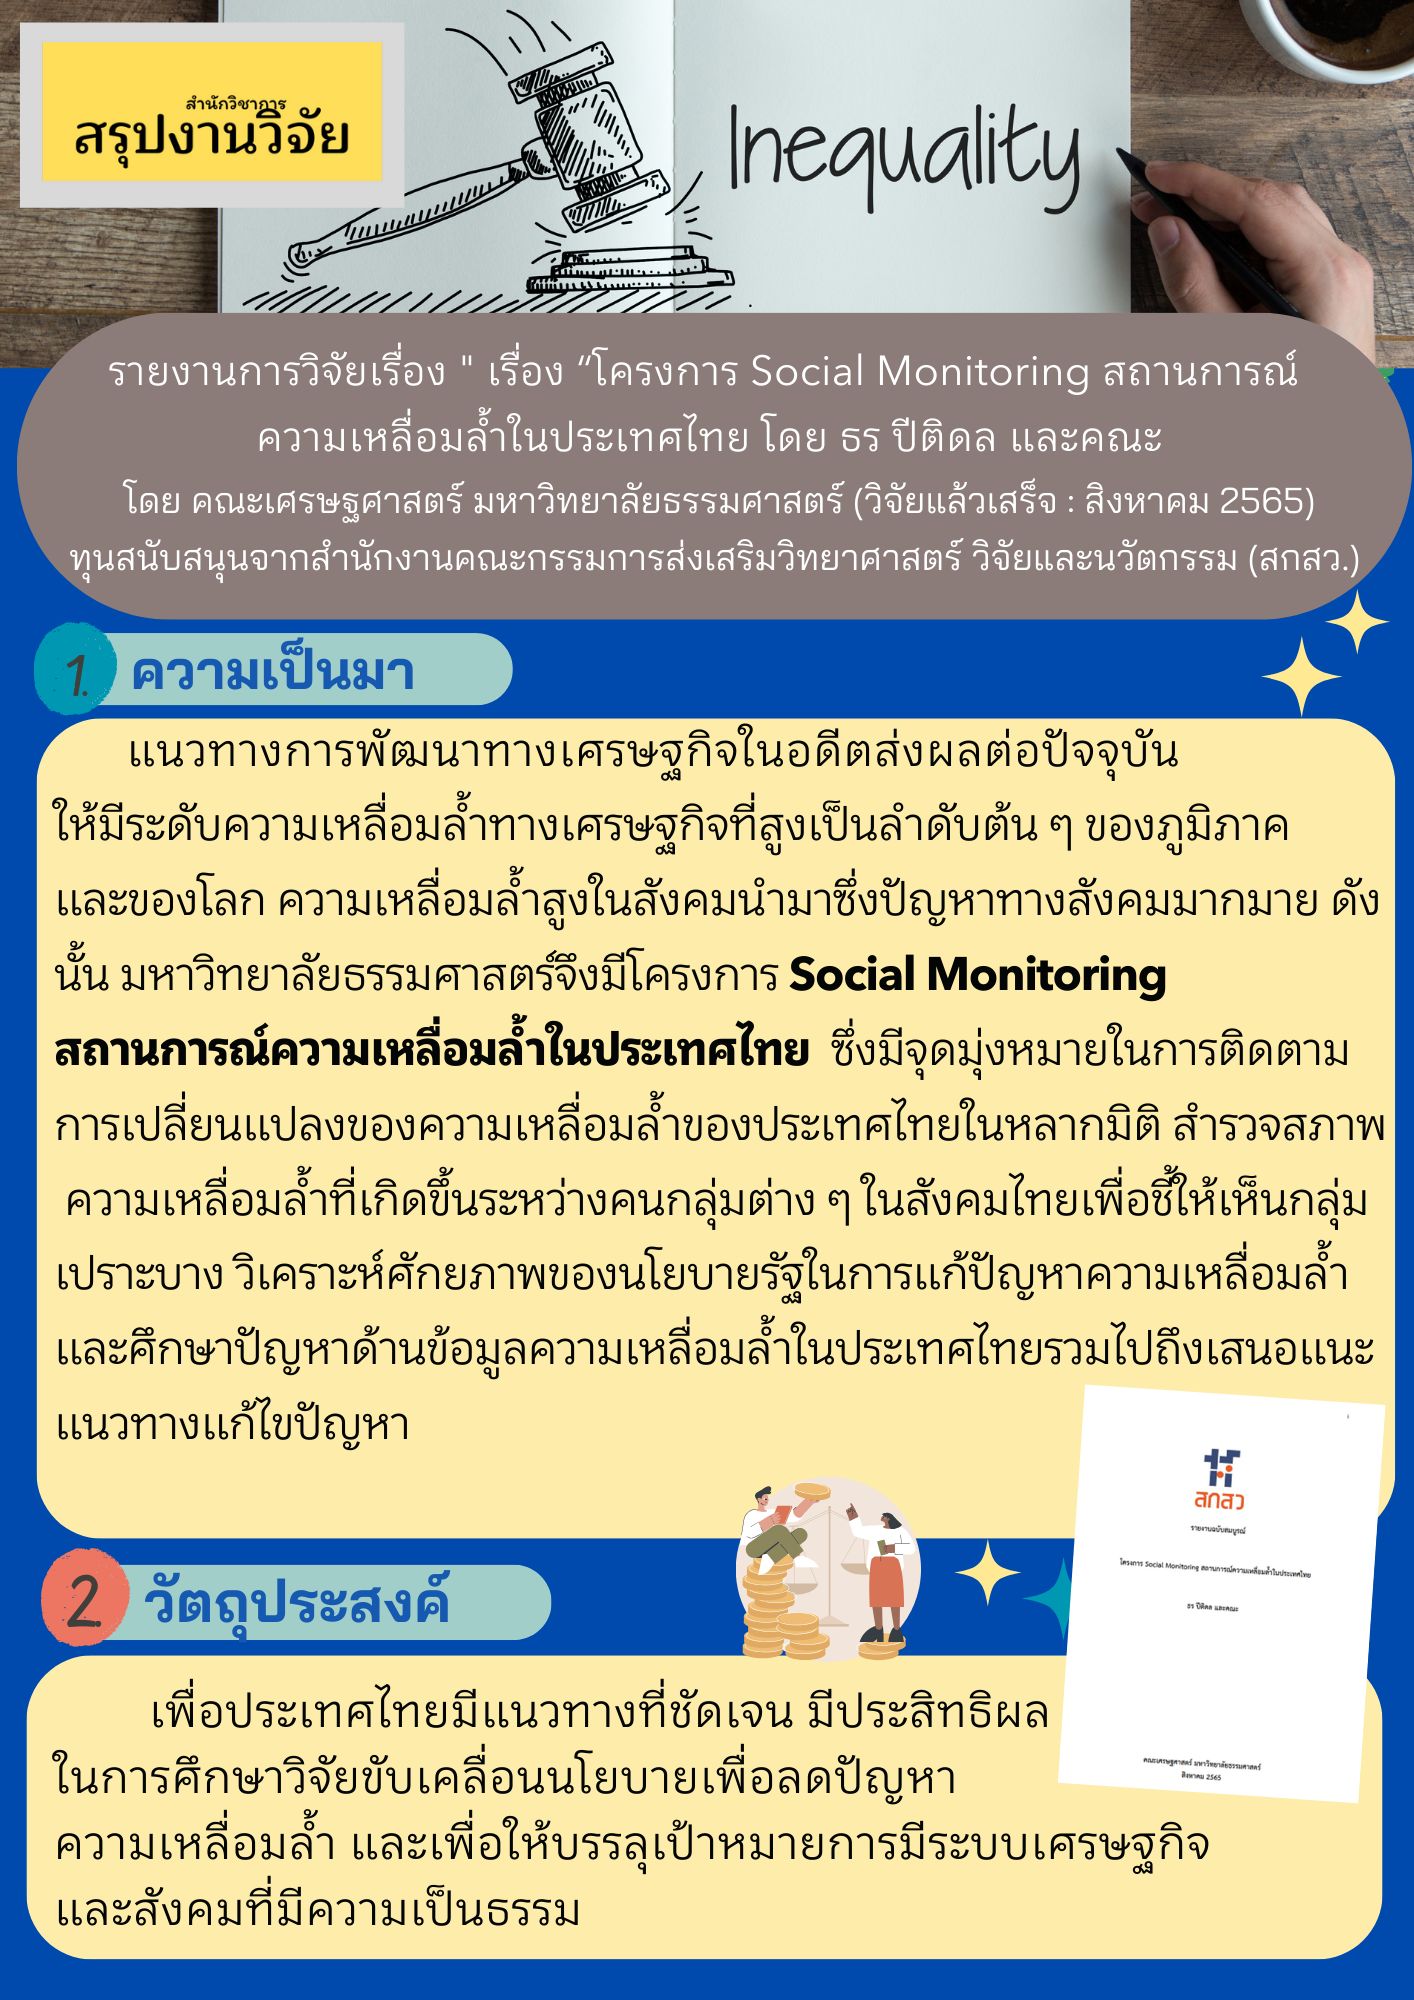 สรุปงานวิจัย “โครงการ Social Monitoring สถานการณ์ความเหลื่อมล้ำในประเทศไทย”